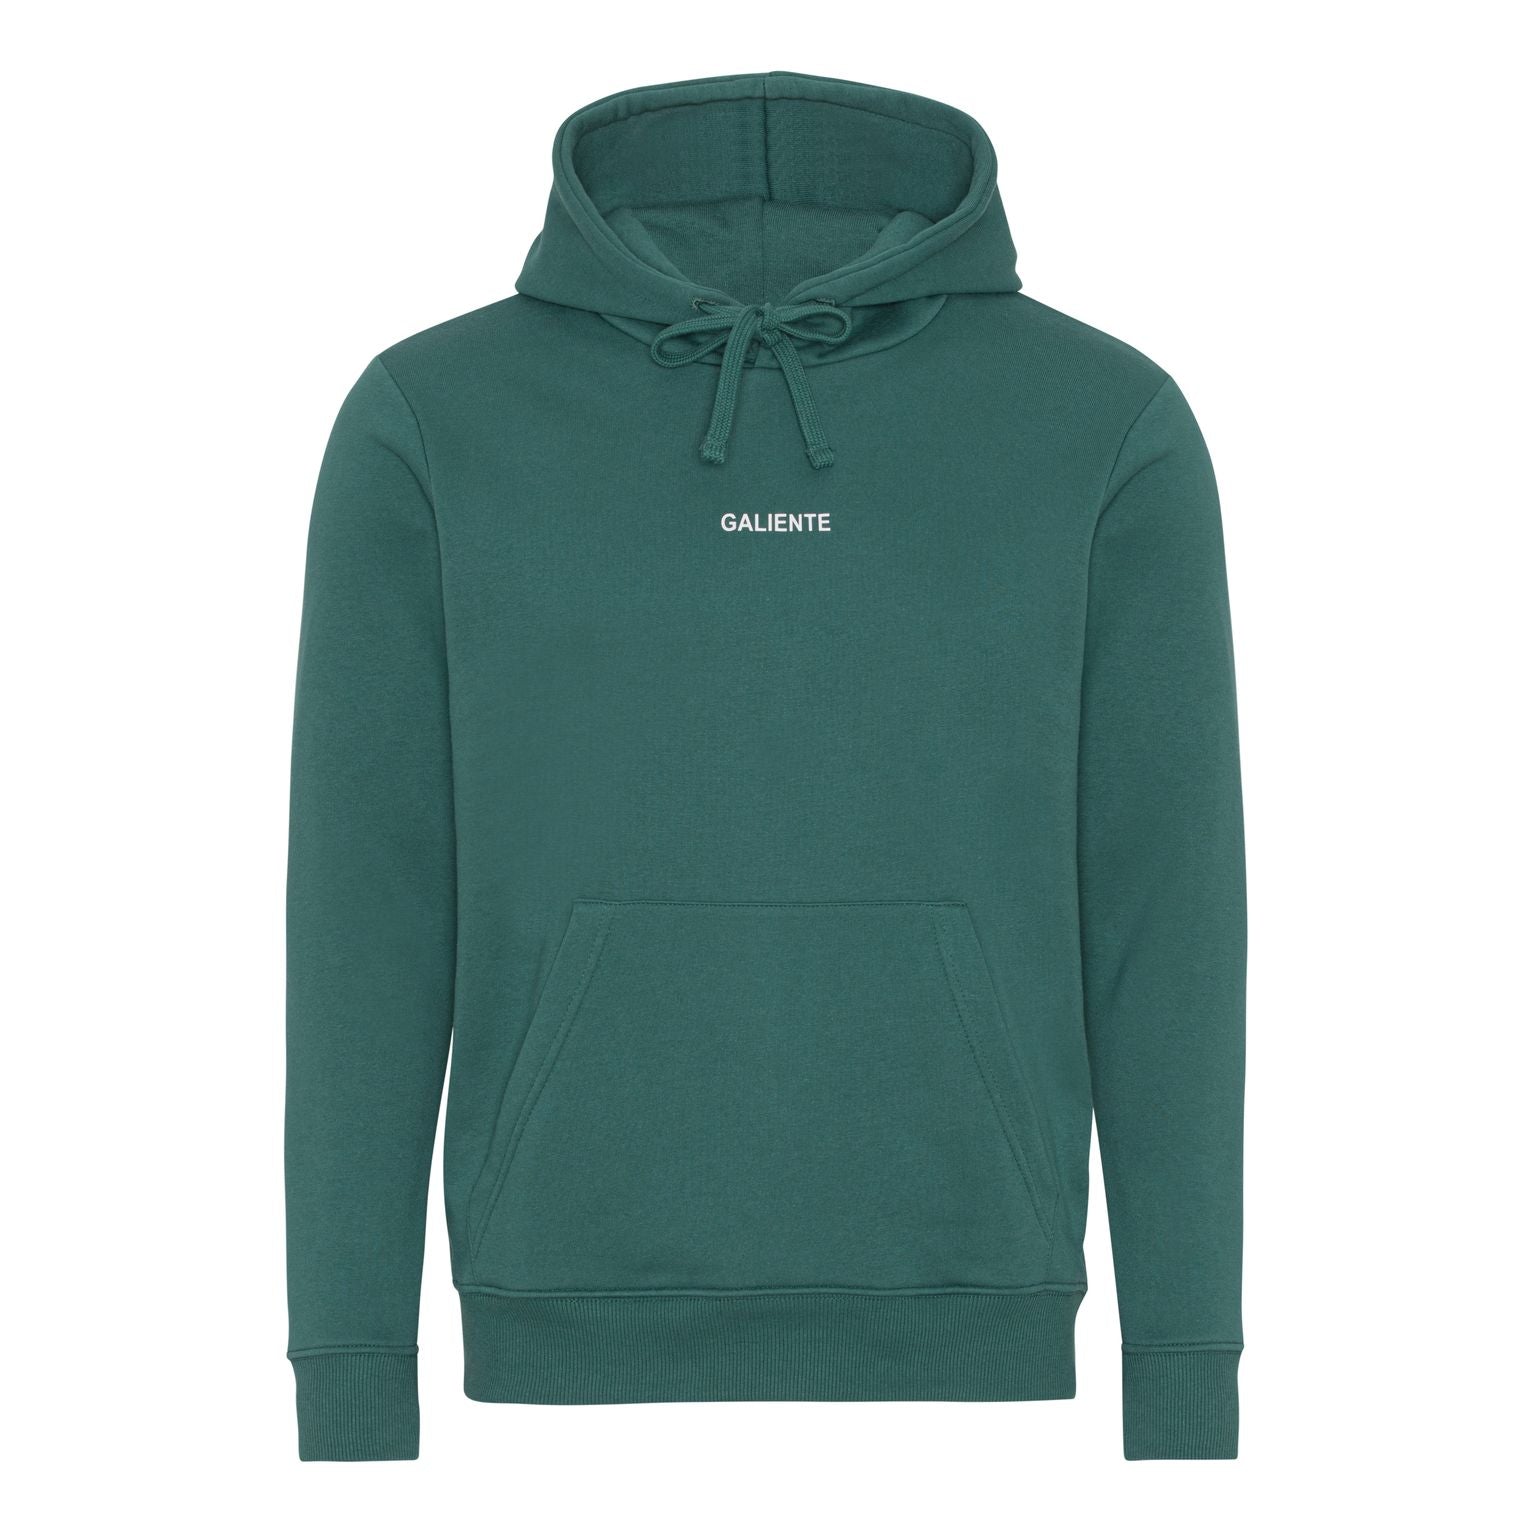 grøn hoodie